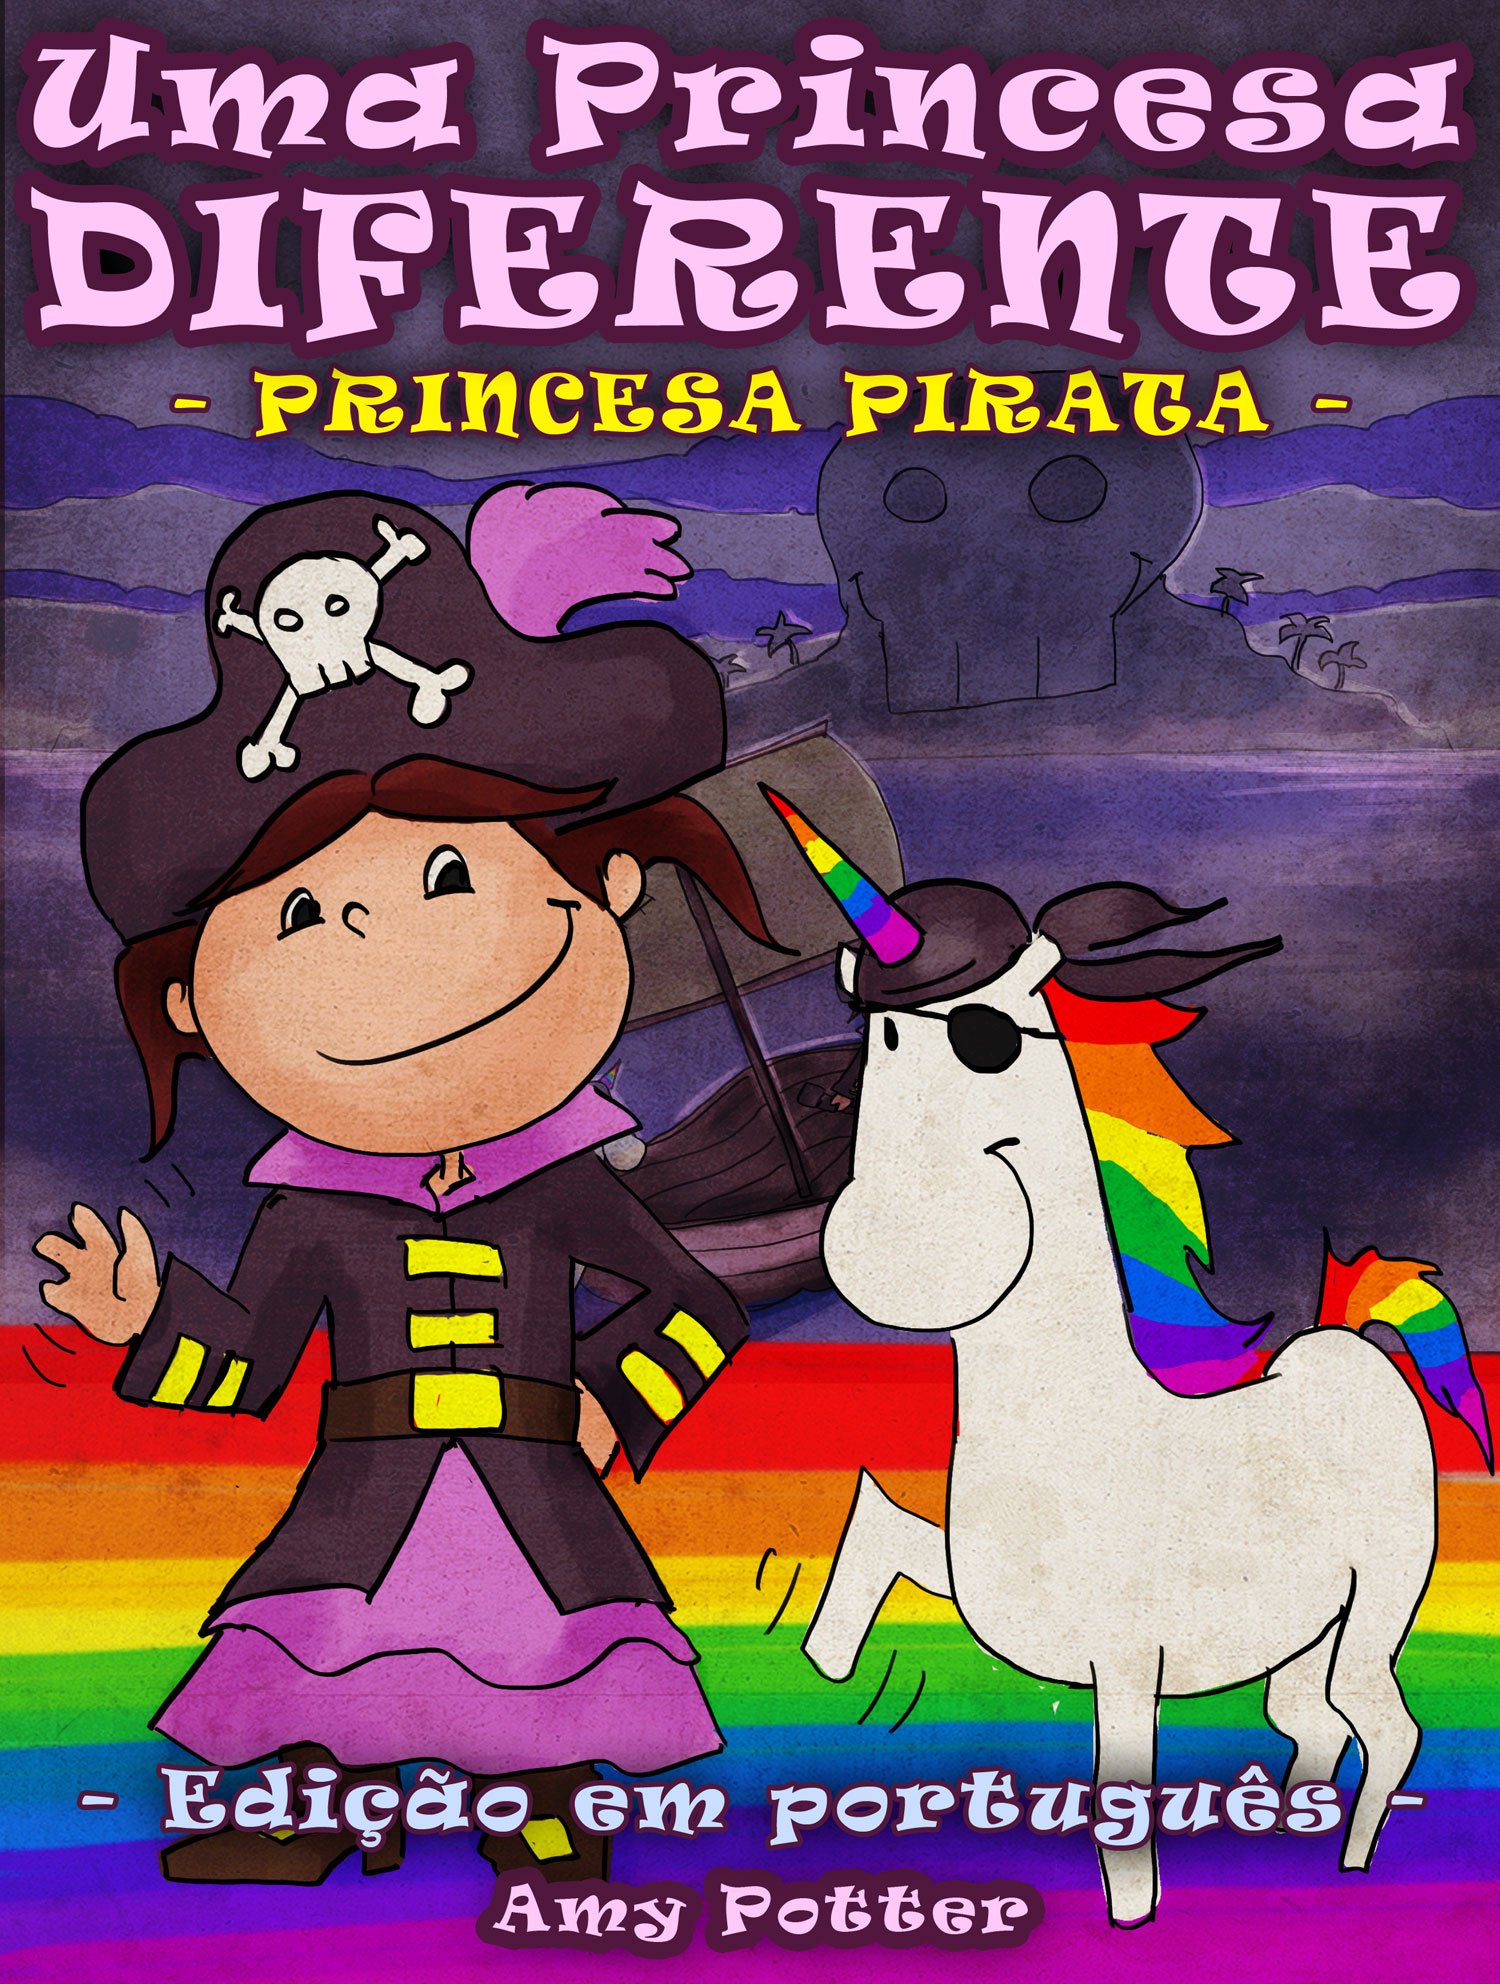 Uma Princesa Diferente - Princesa Pirata (livro infantil ilustrado) (Portuguese Edition)